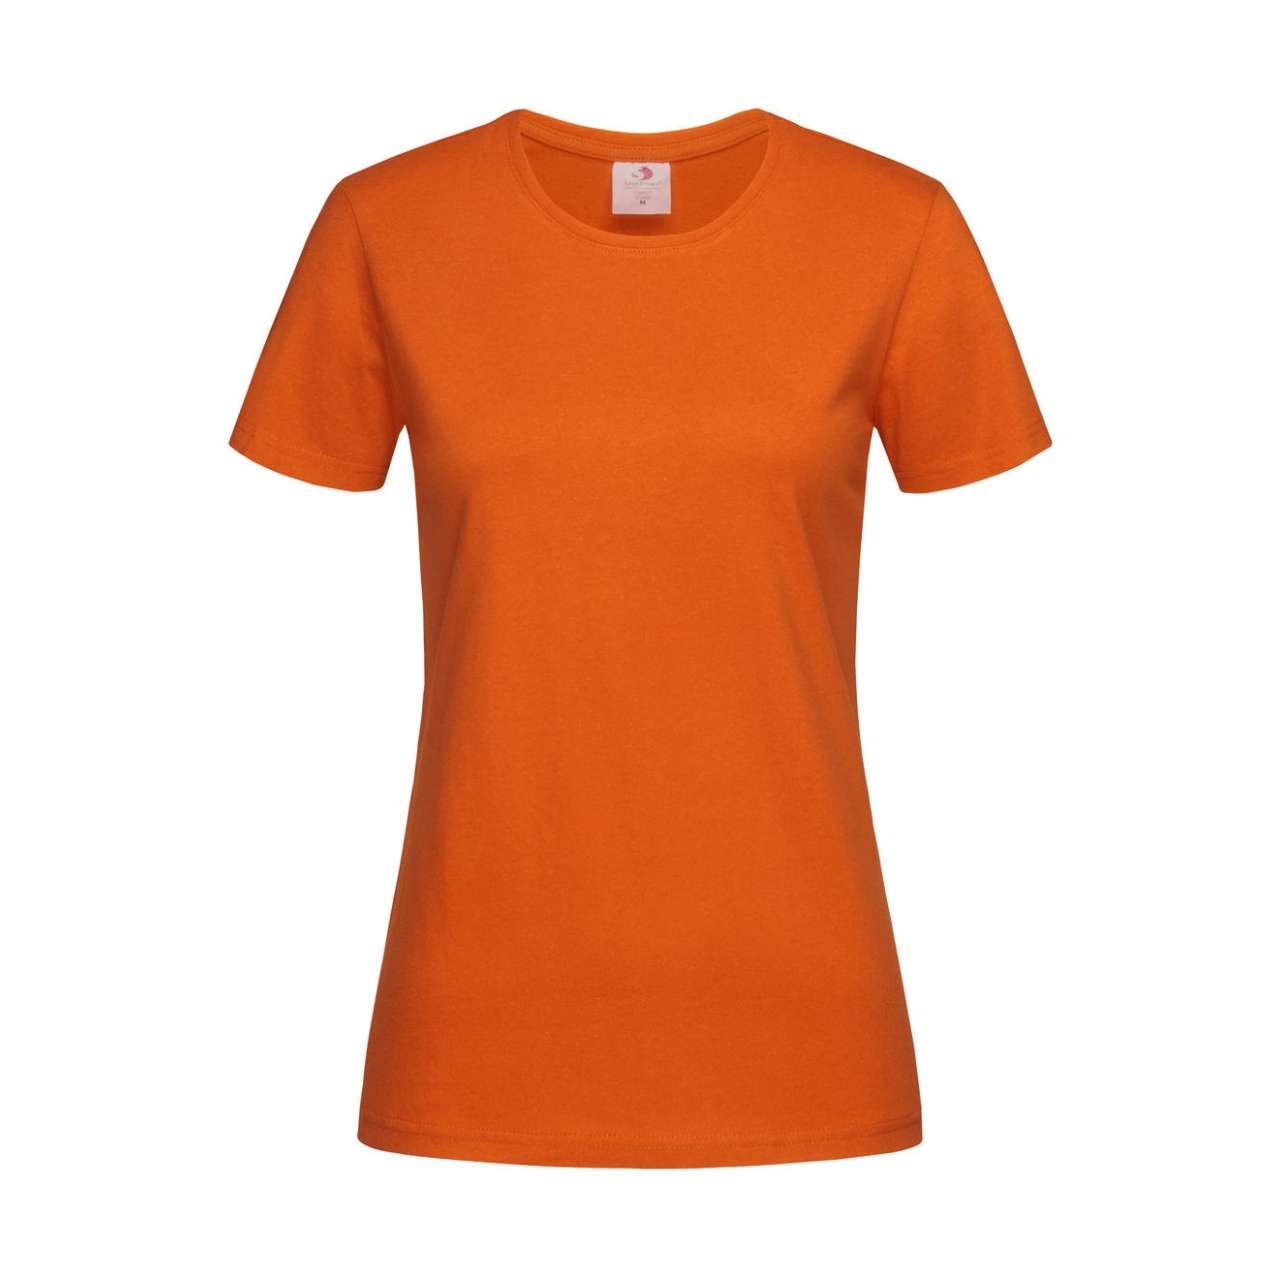 Tričko dámské Stedman Fitted s kulatým výstřihem - oranžové, S